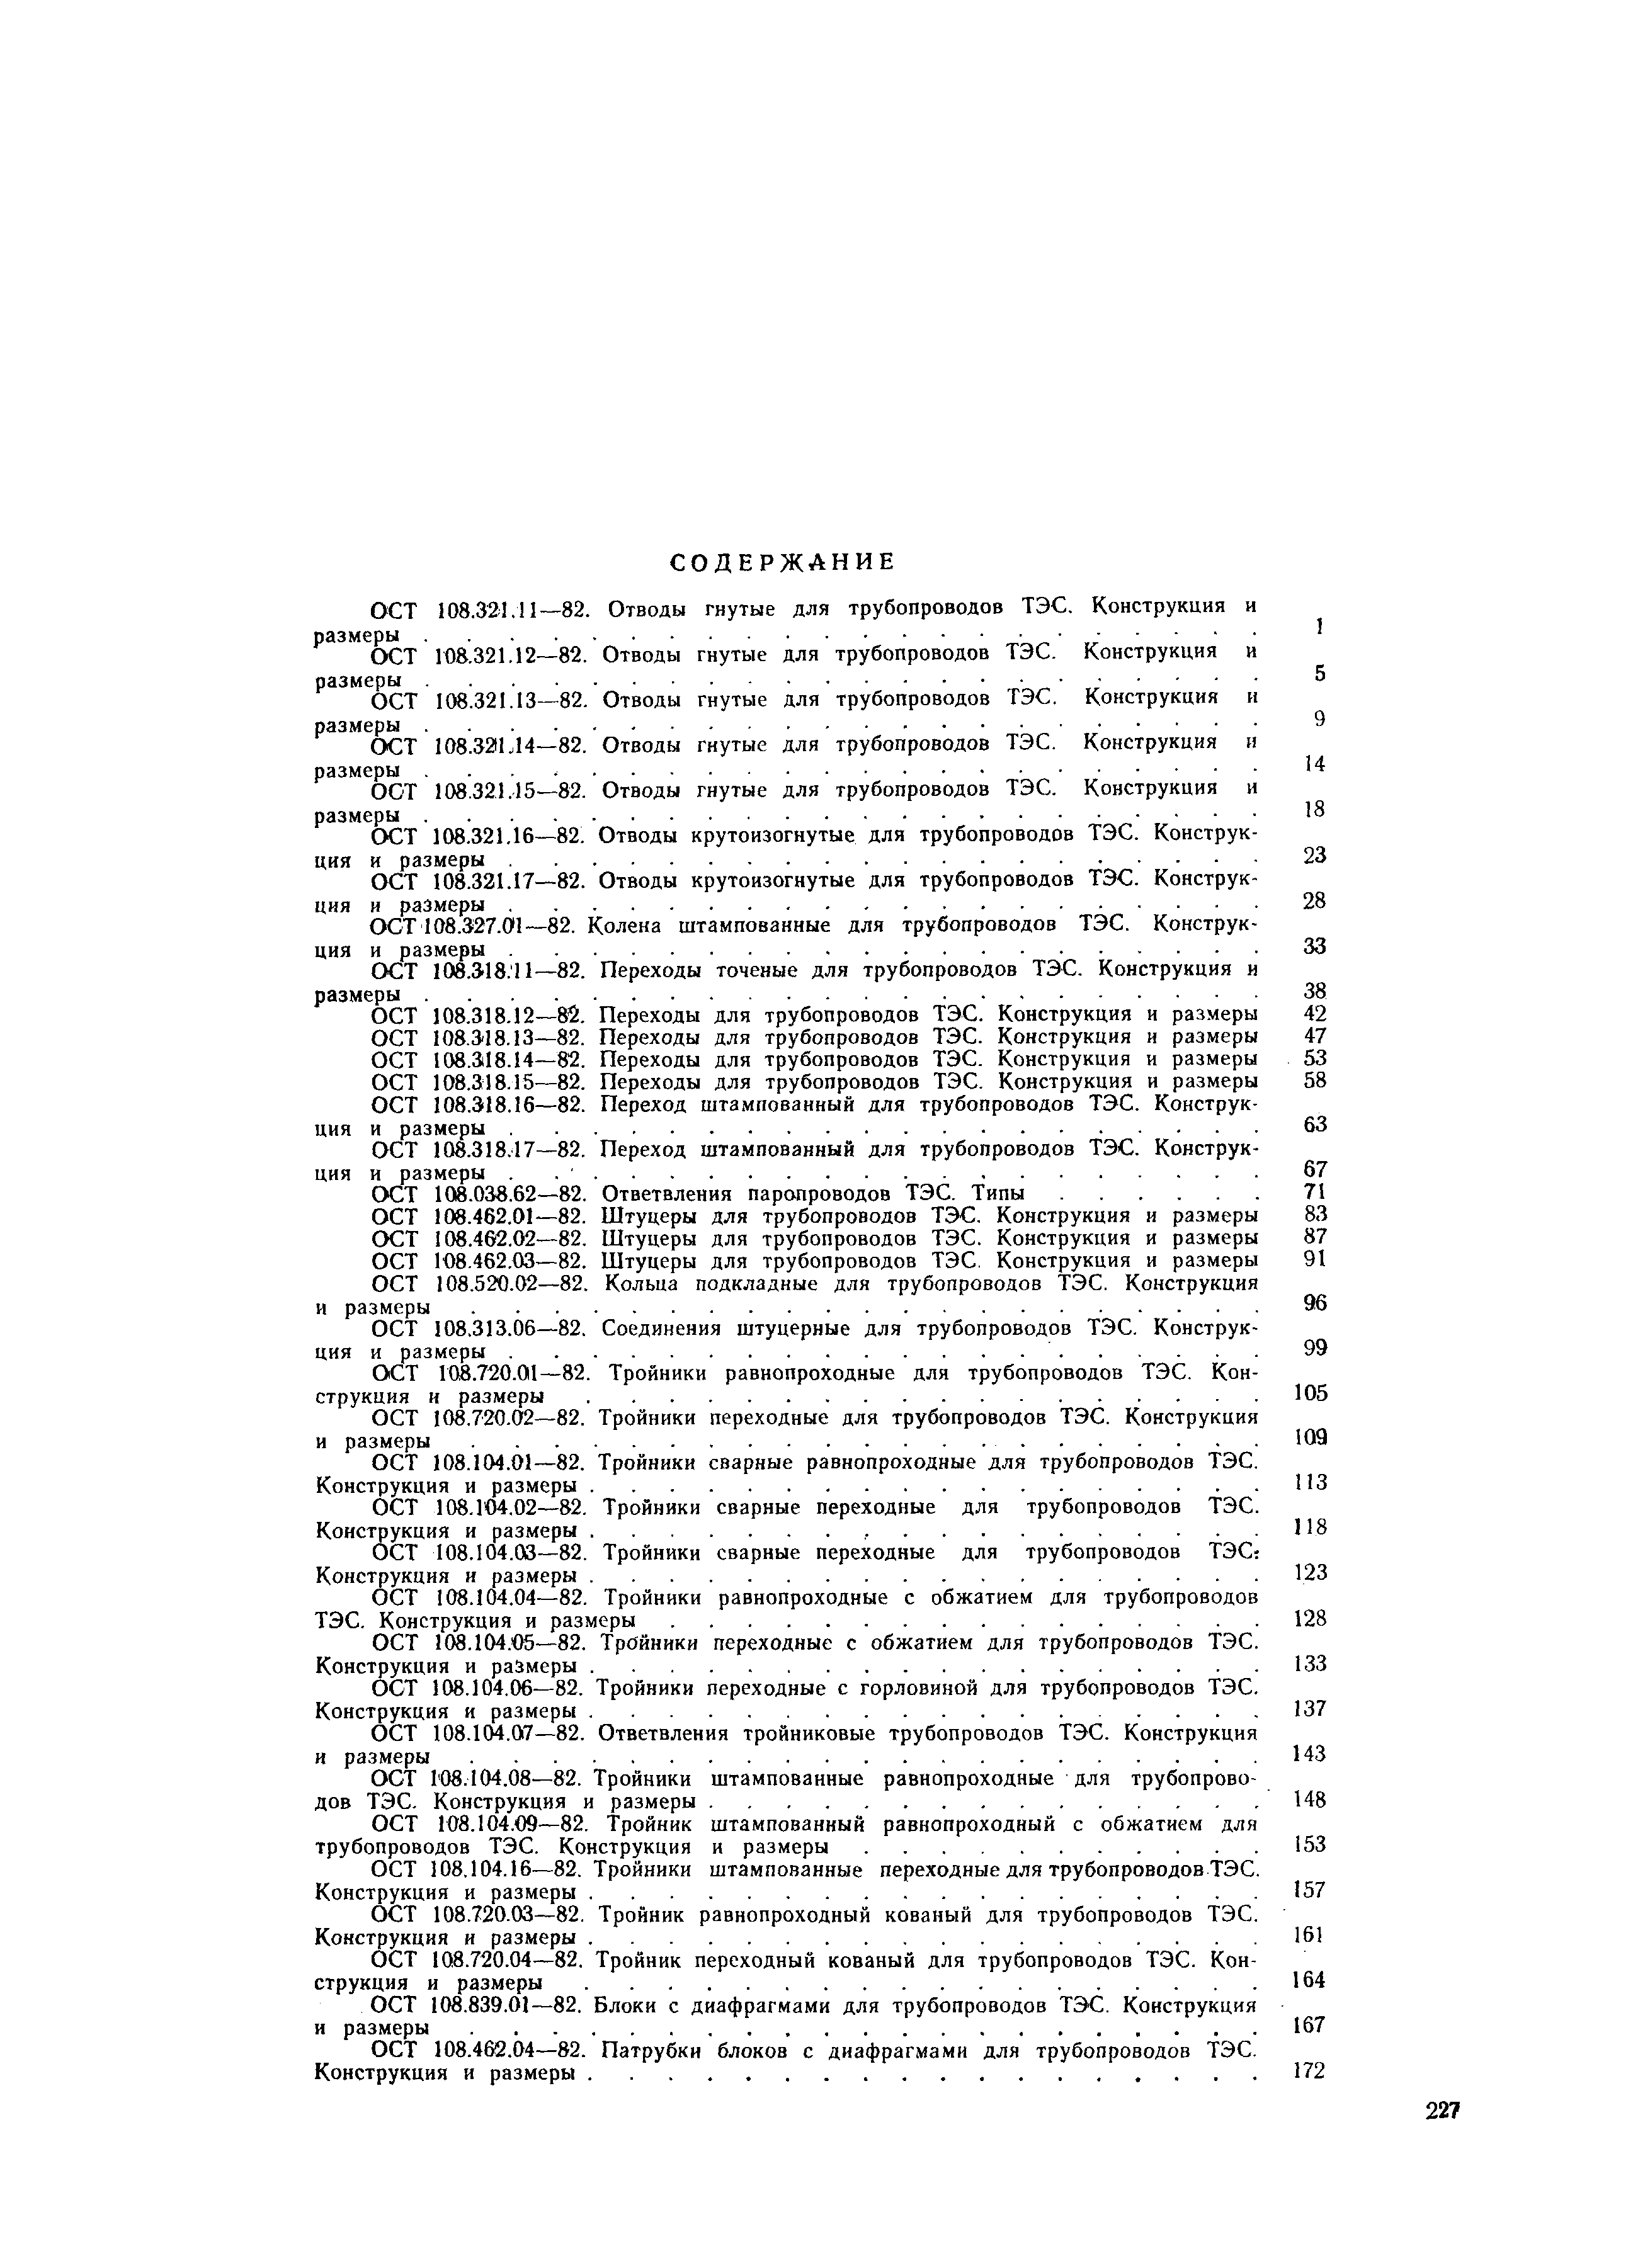 ОСТ 108.313.06-82